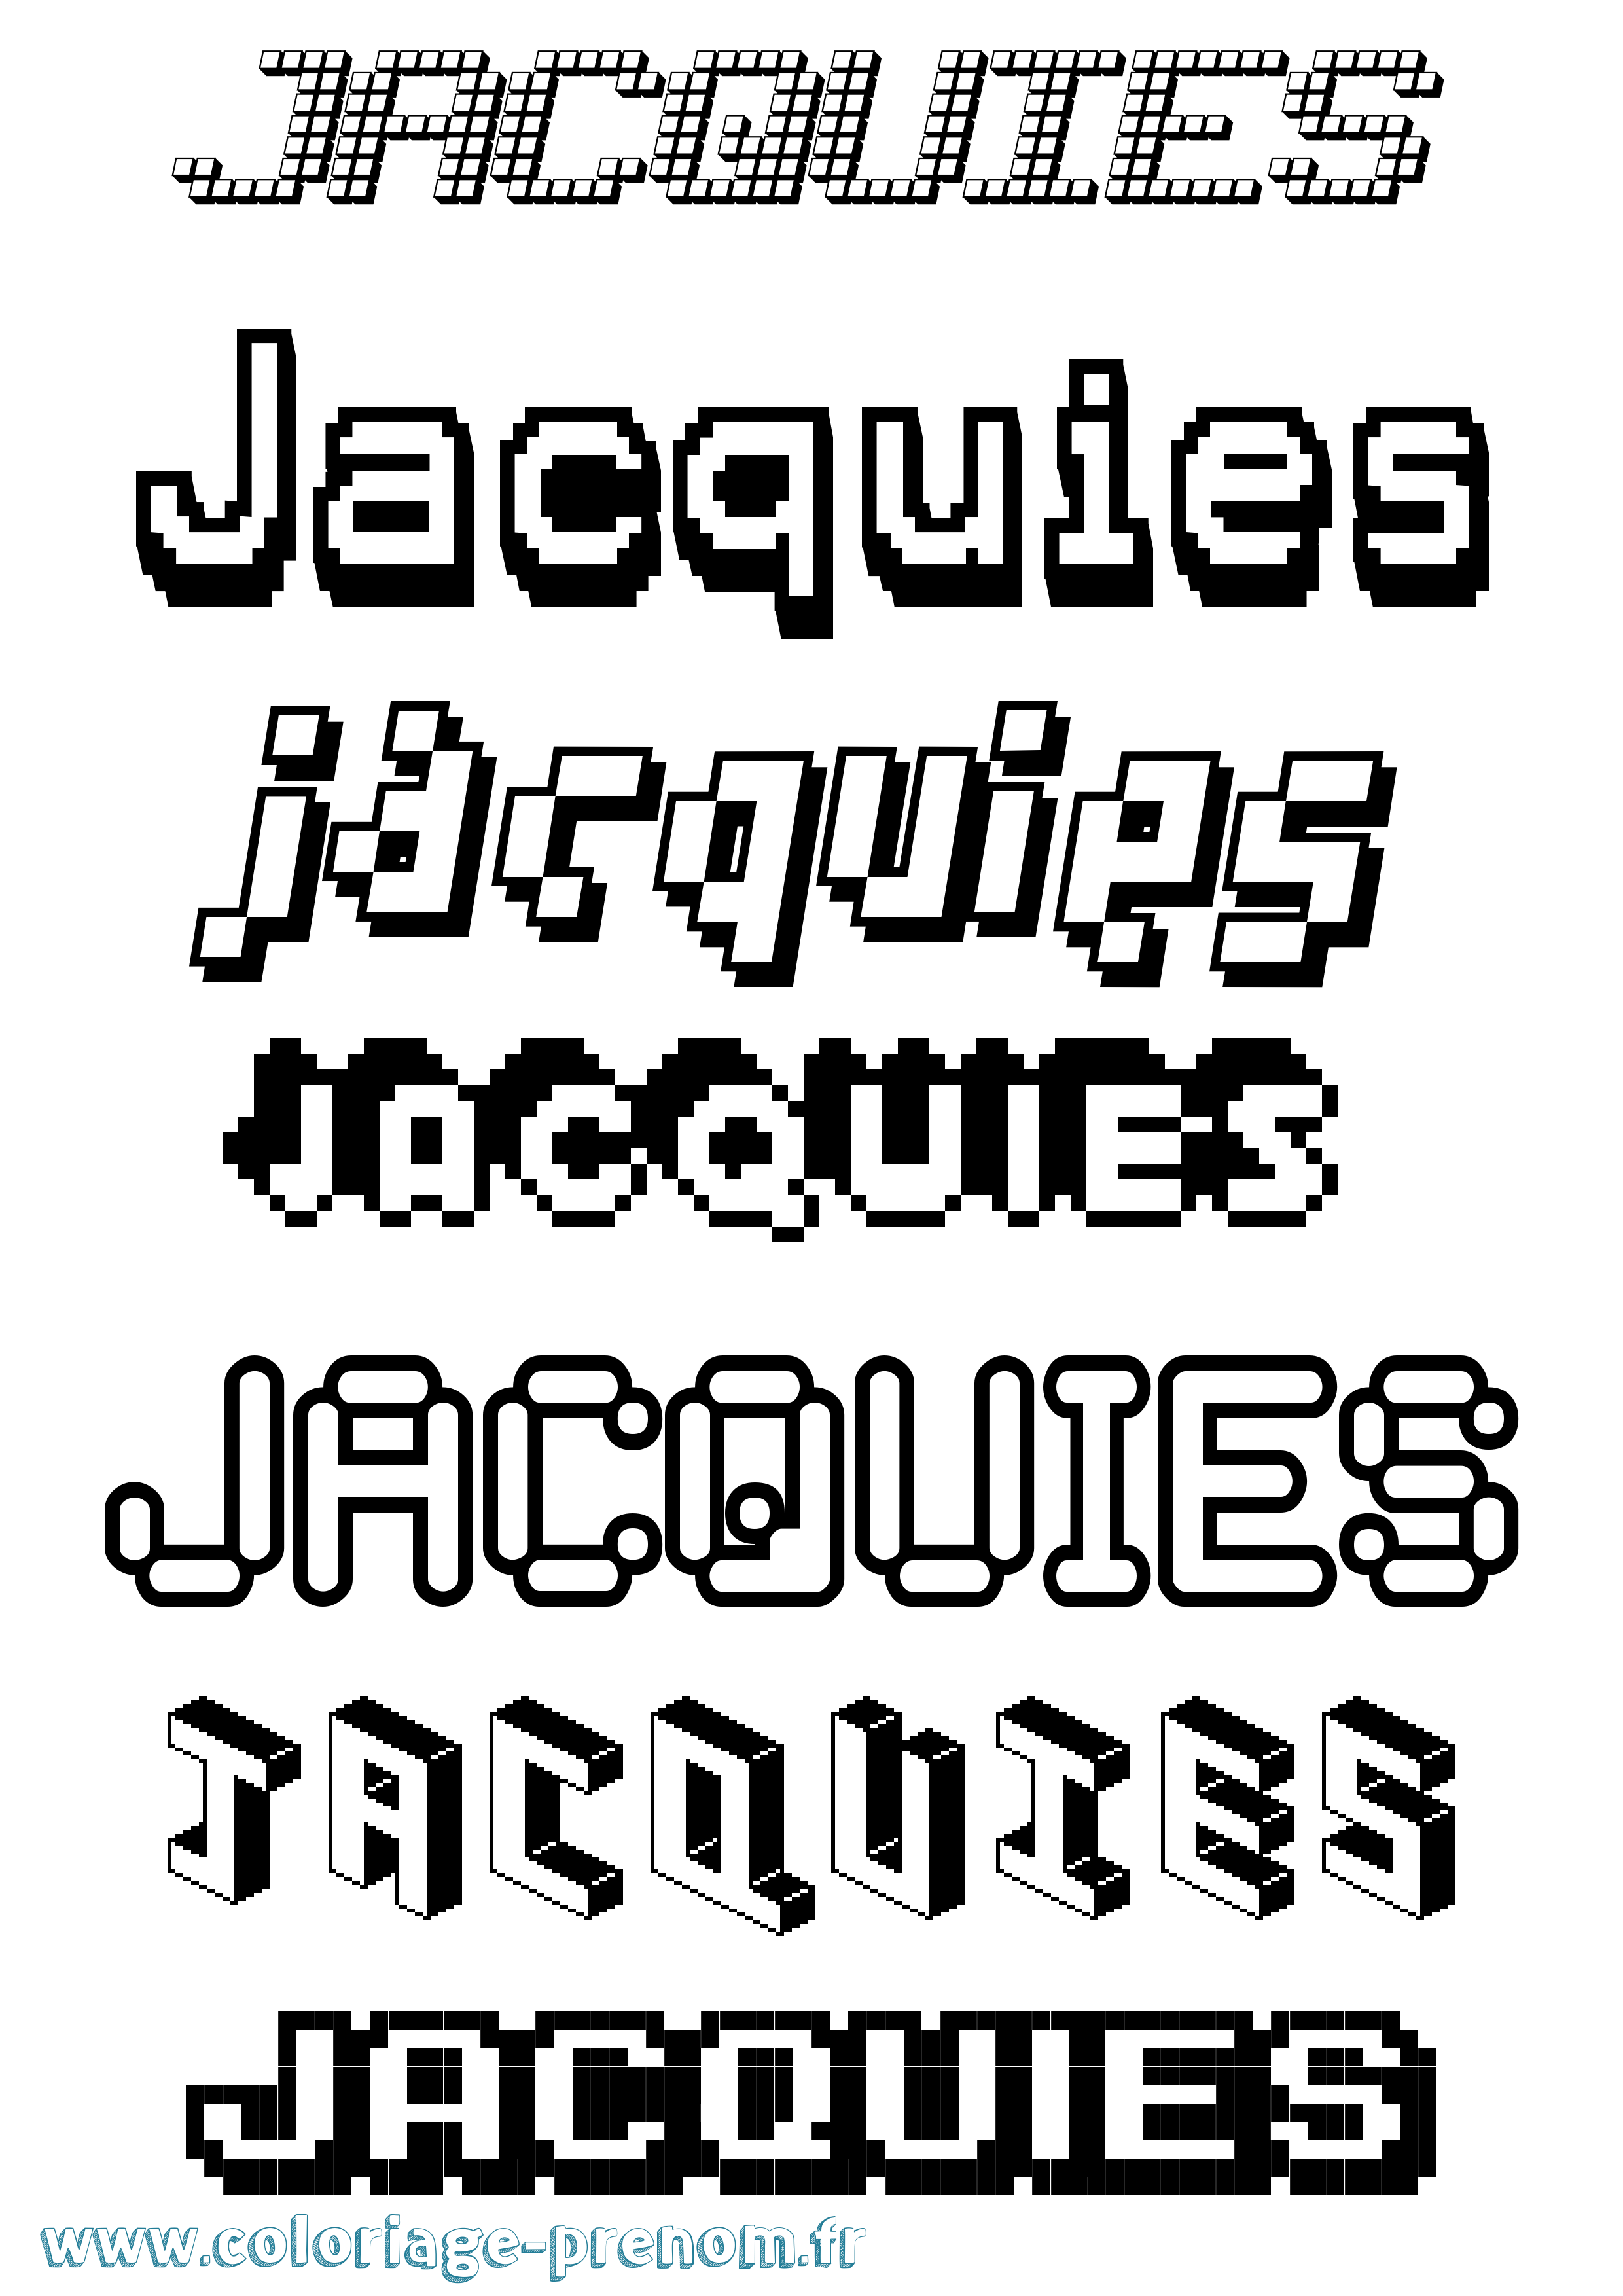 Coloriage prénom Jacquies Pixel